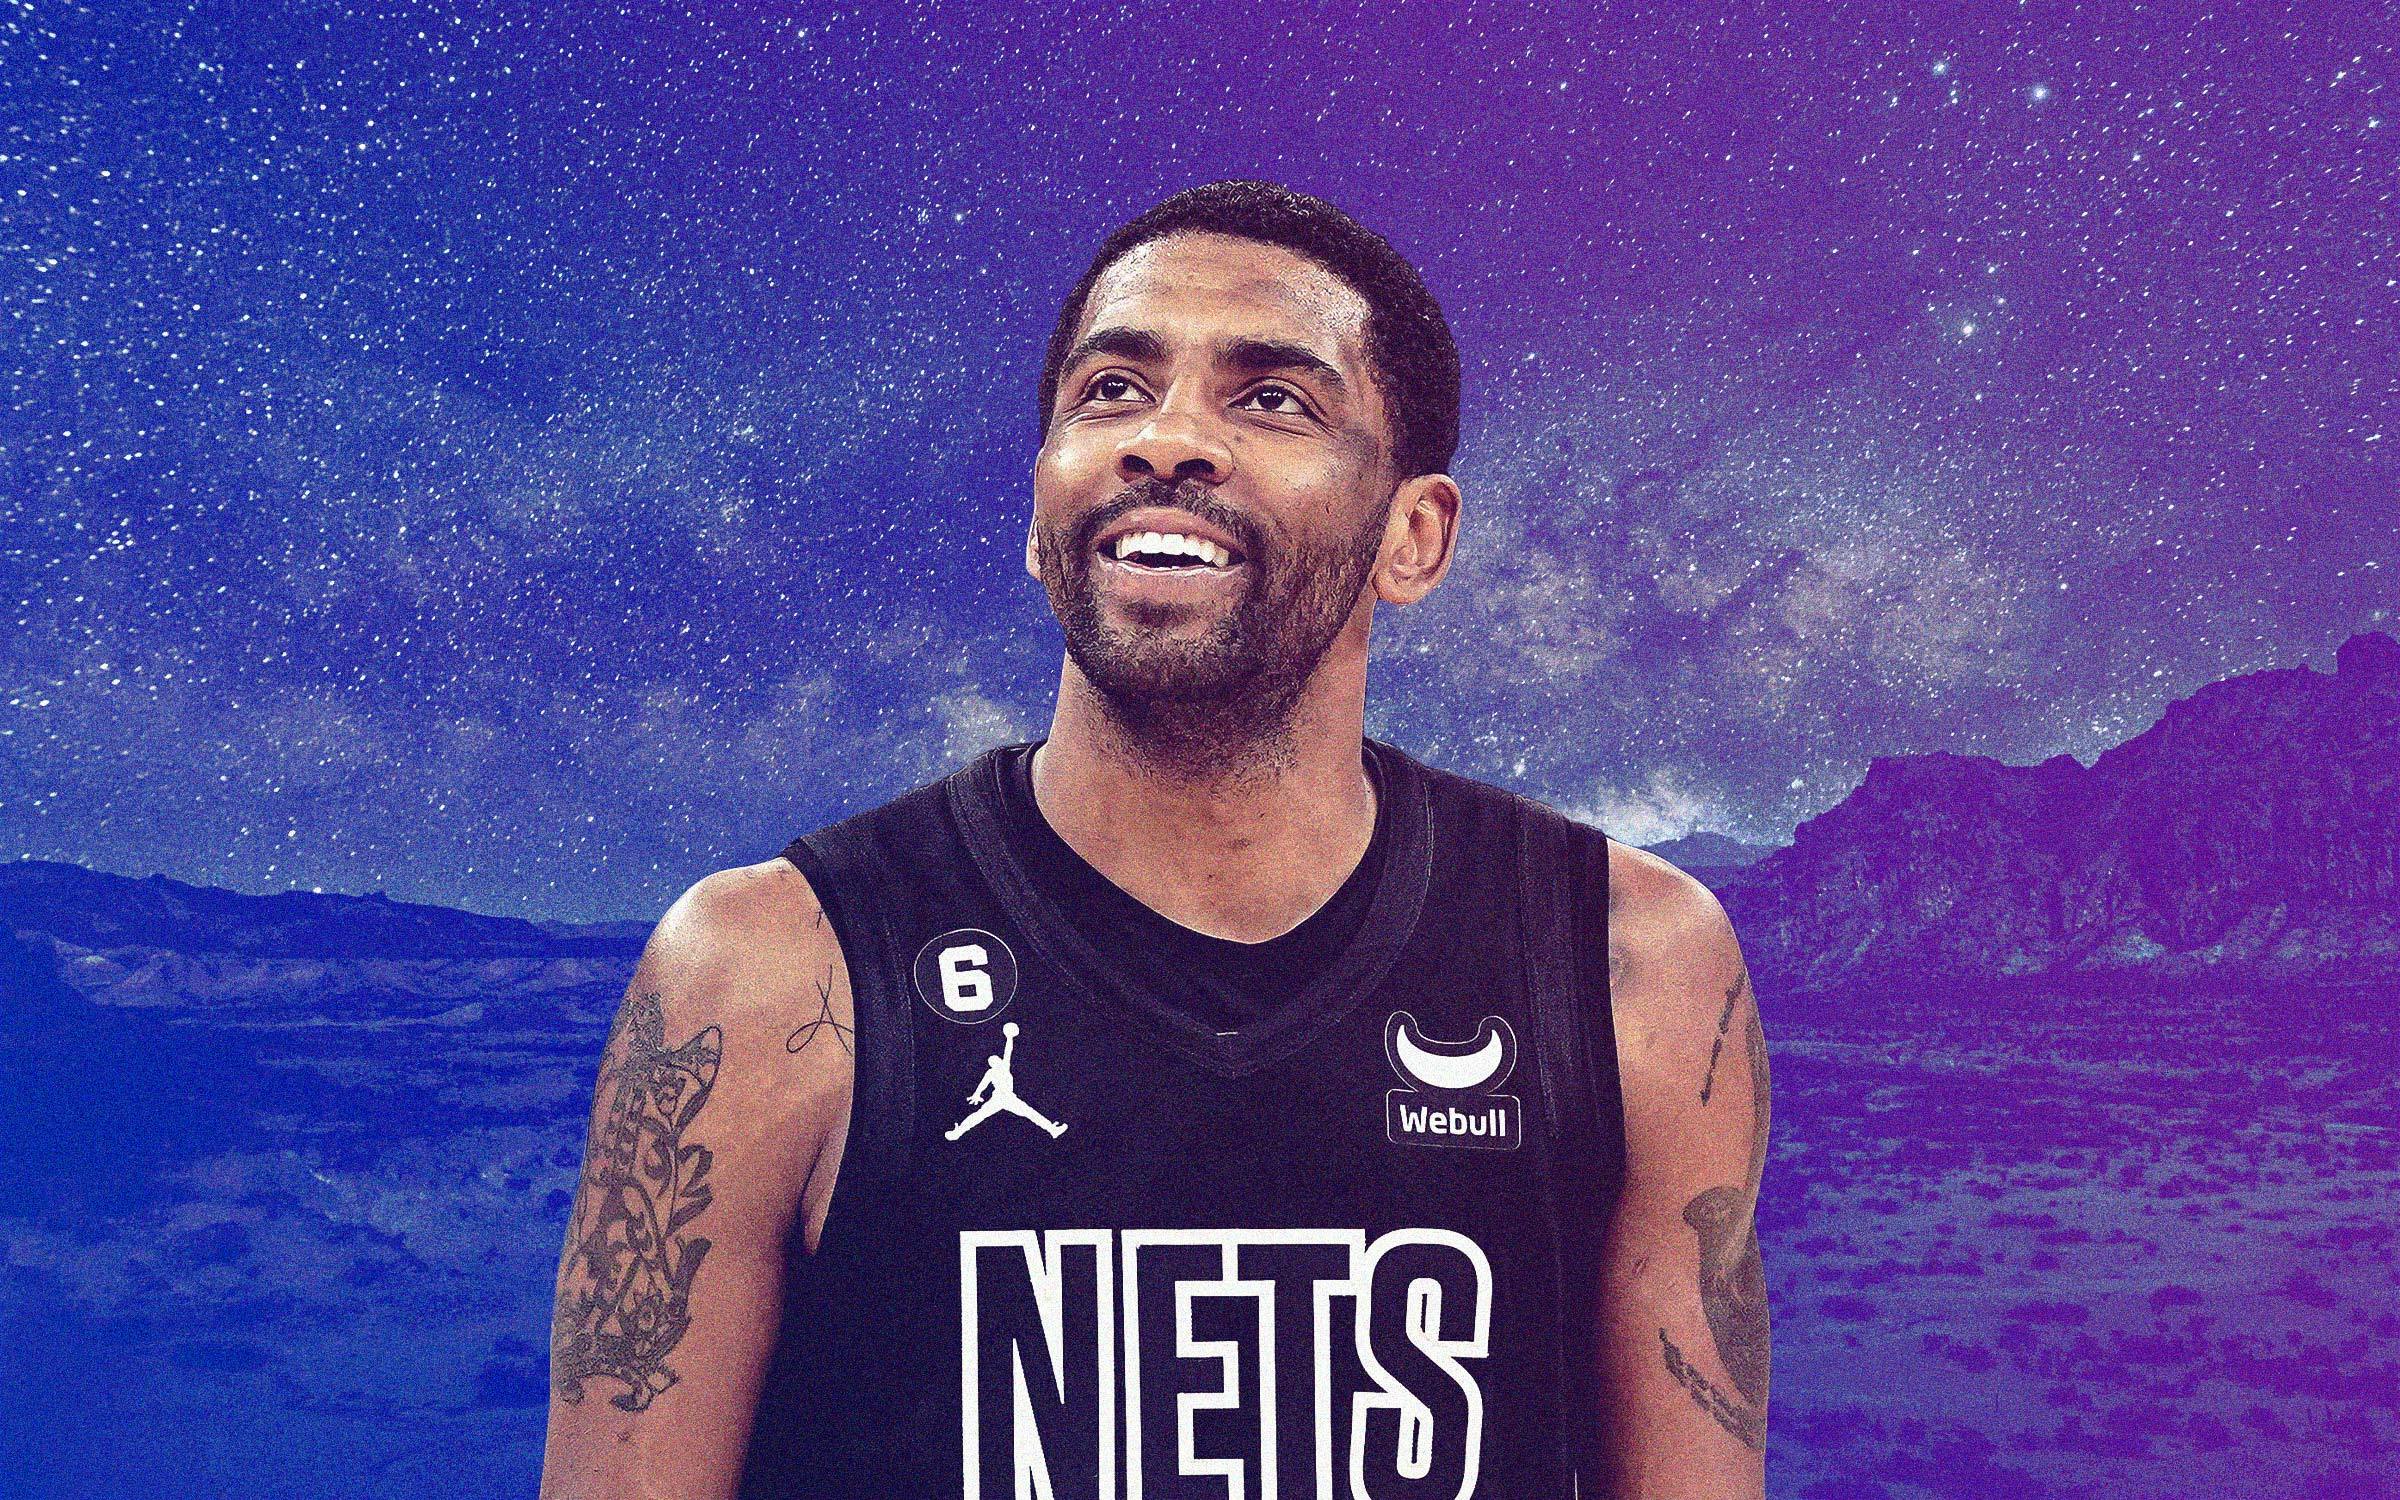 150 Best Brooklyn Nets ideas  brooklyn nets, nba wallpapers, nba art